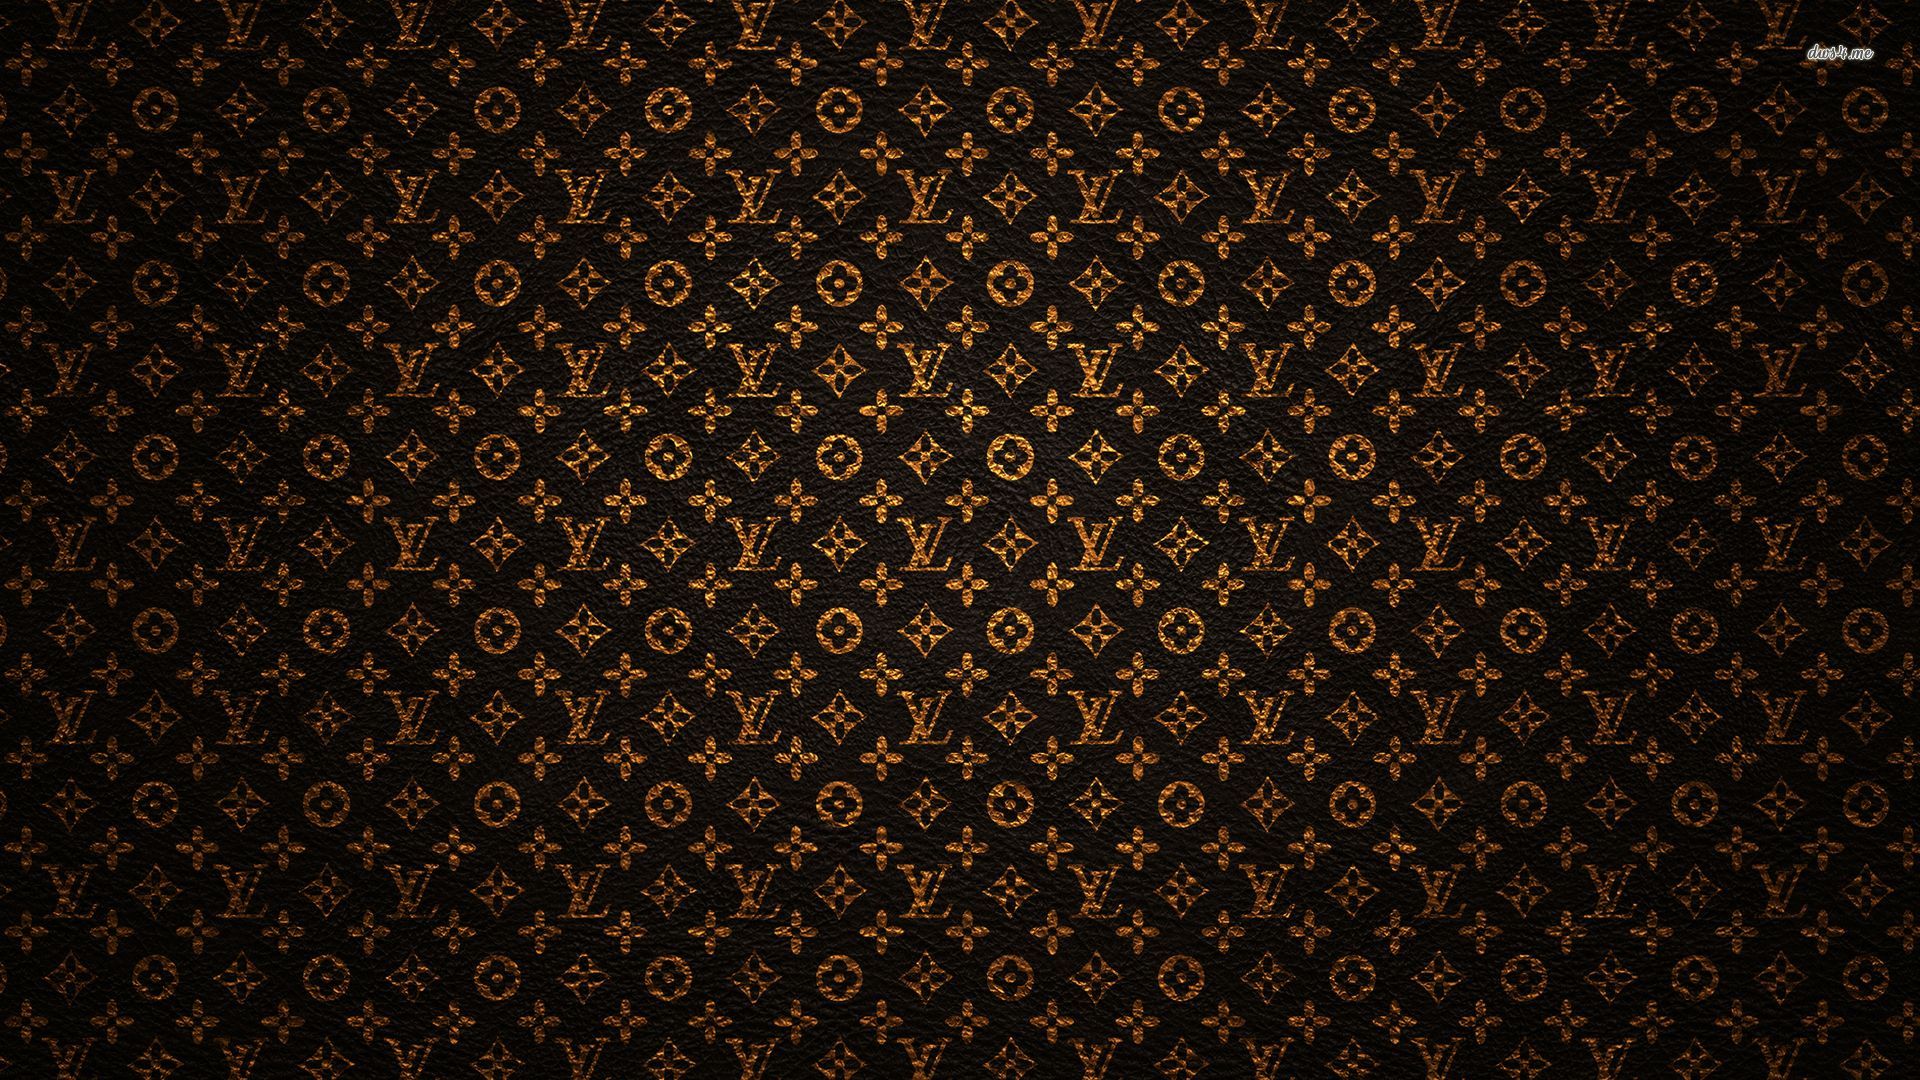 21391-louis-vuitton-pattern-1920x1080-abstract-wallpaper.jpg